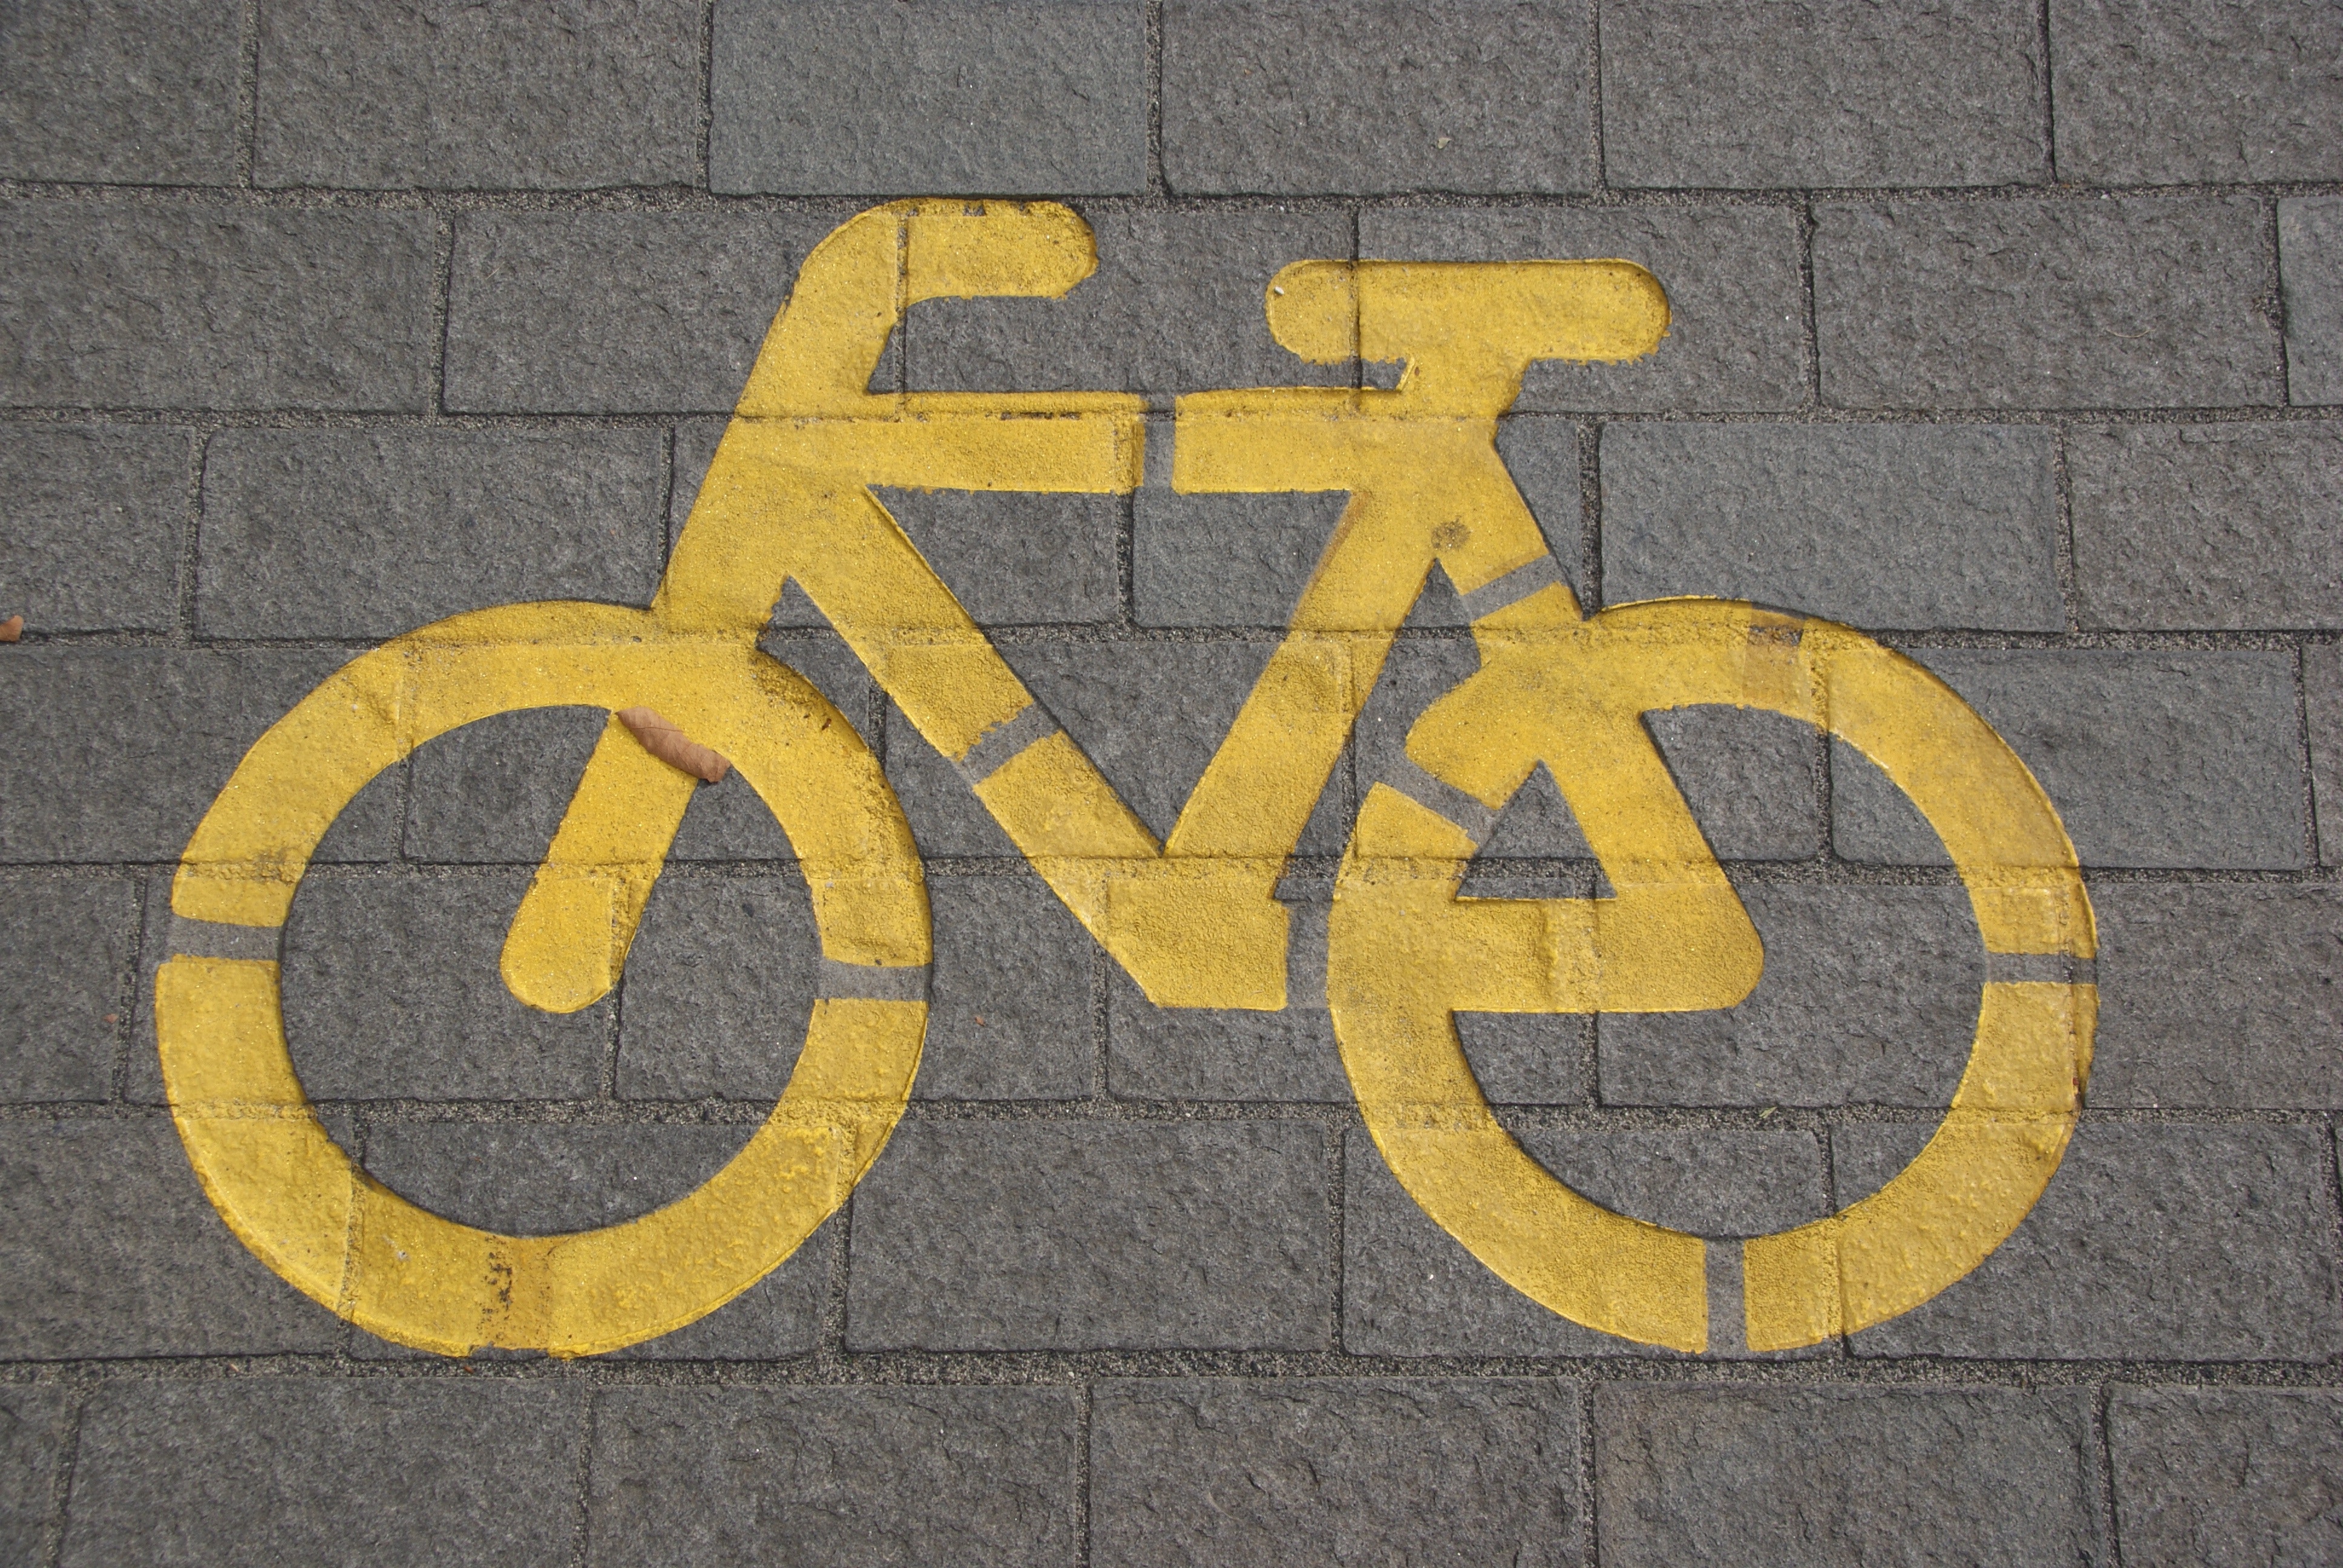 Kerékpáros felvonulás miatt forgalomkorlátozás lesz szombaton - Blikk